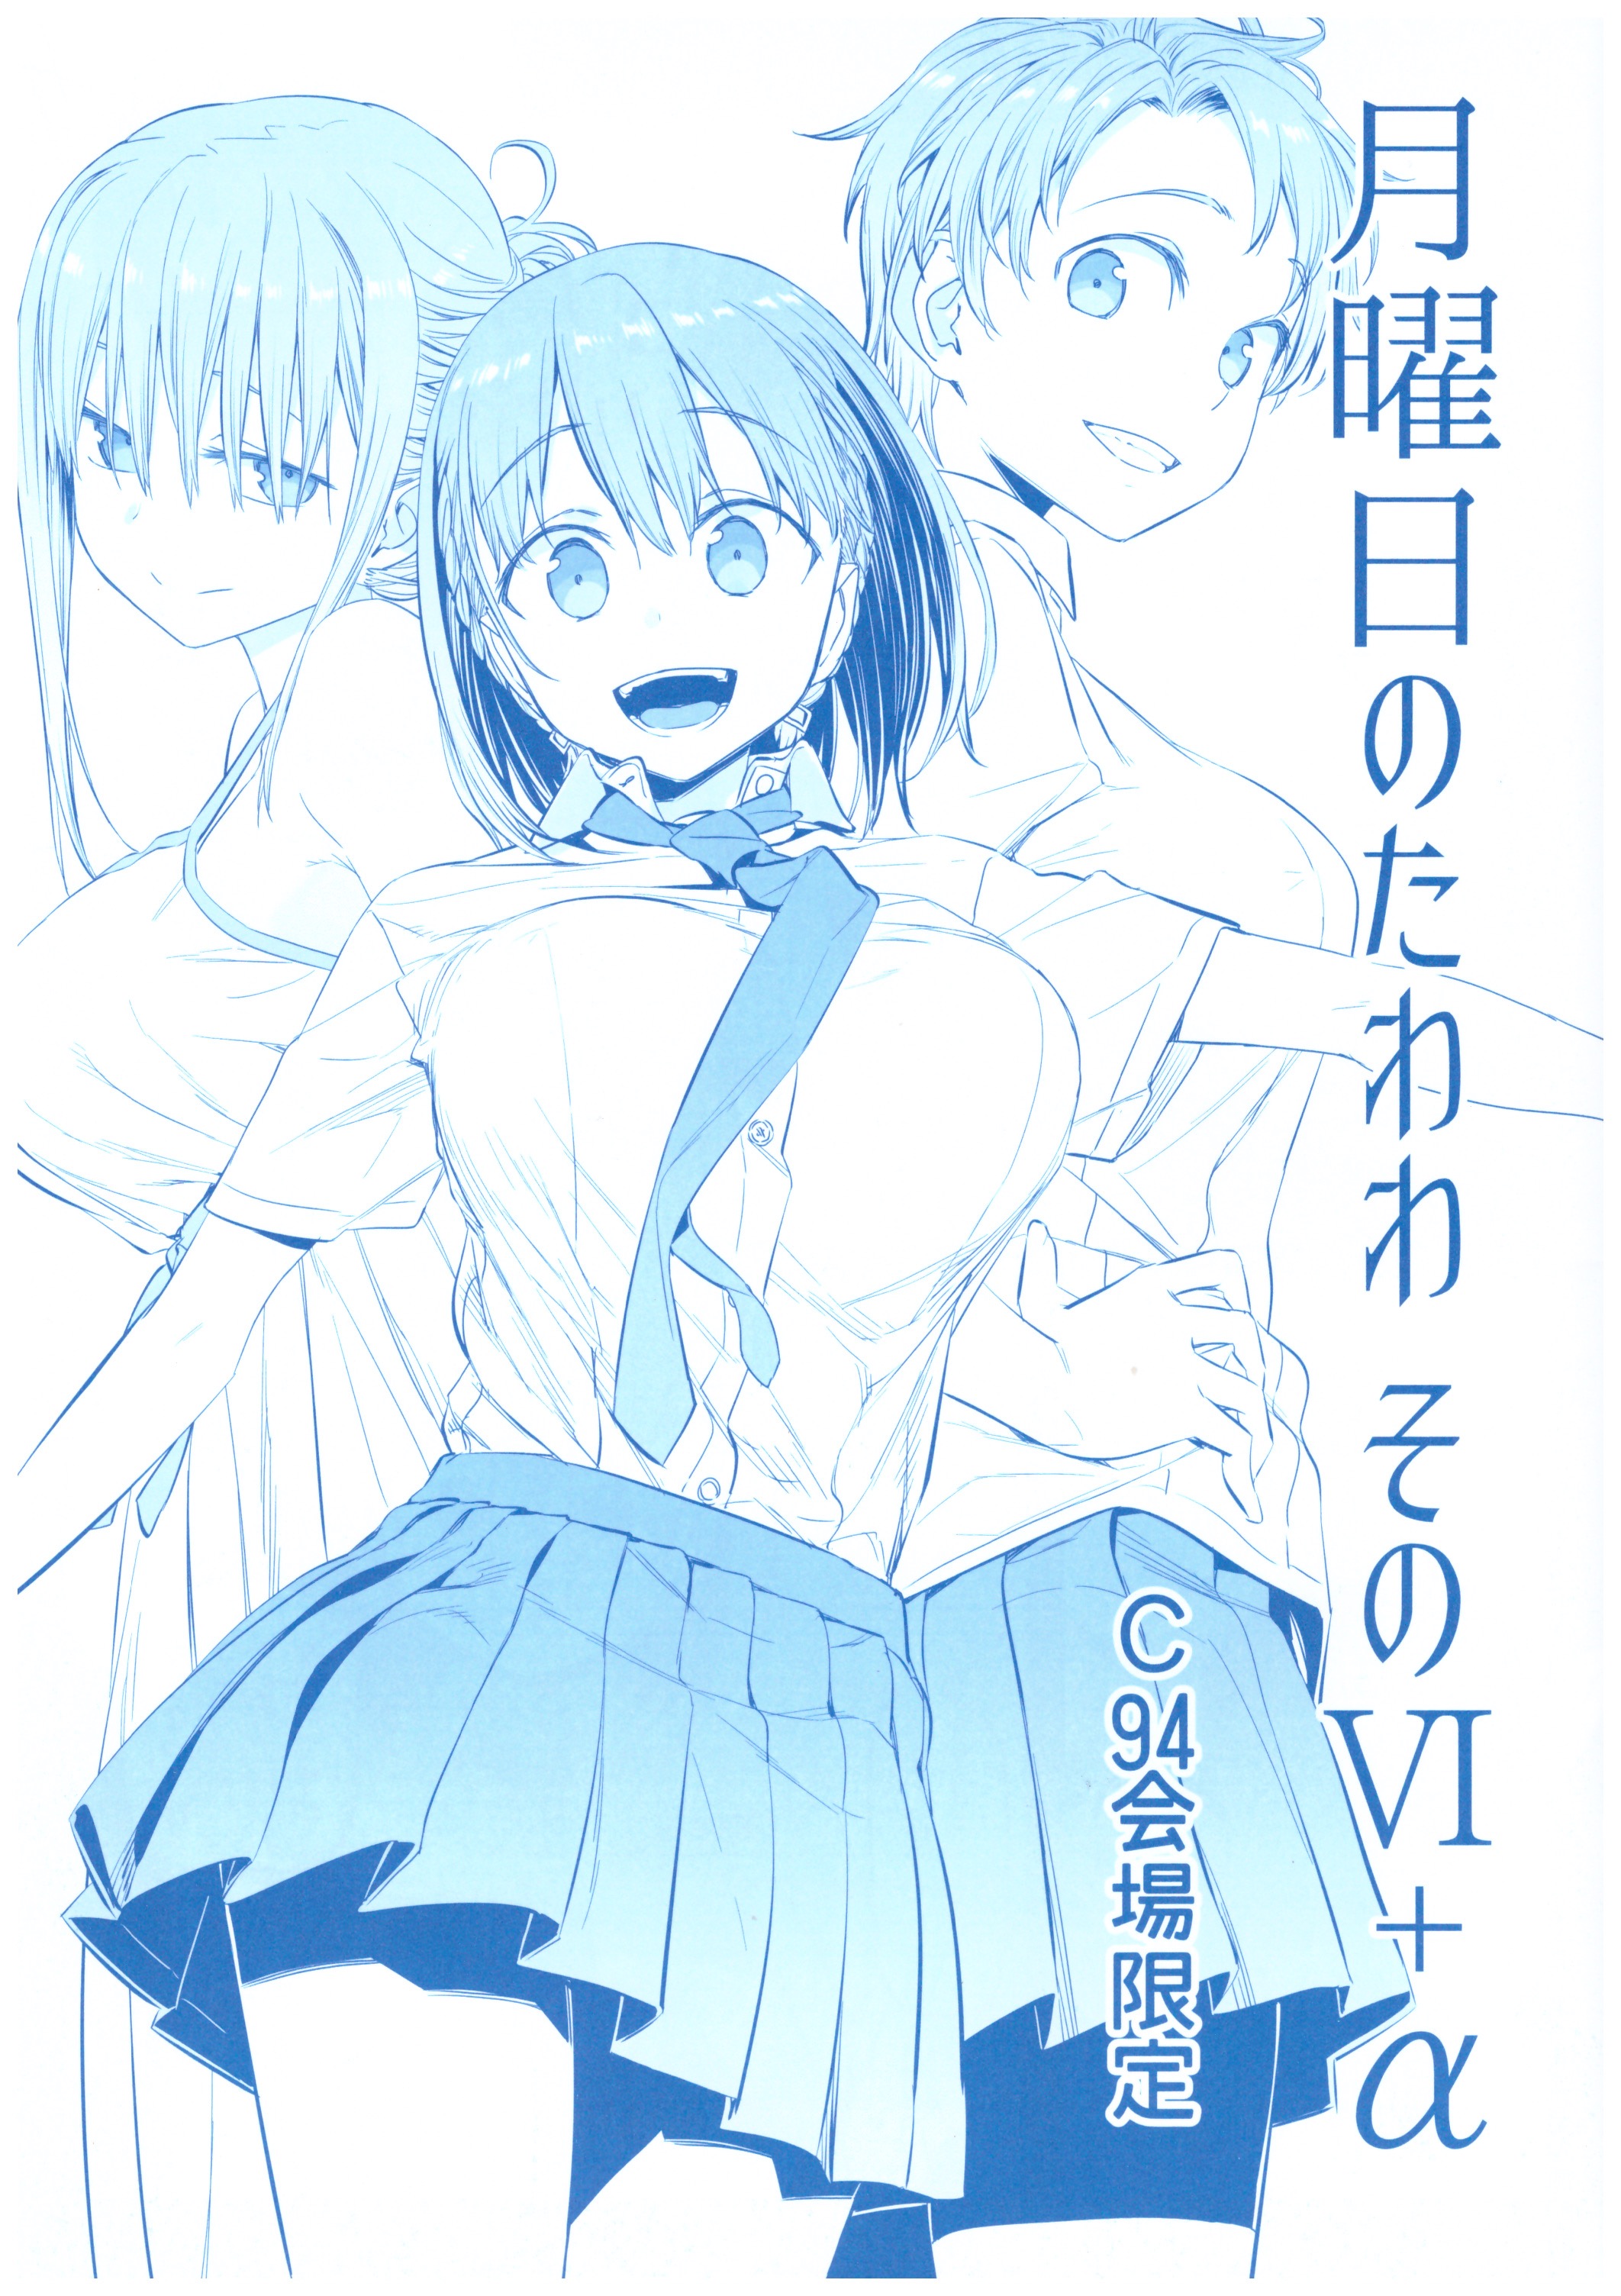 Read Getsuyoubi No Tawawa Manga [Latest Chapters]